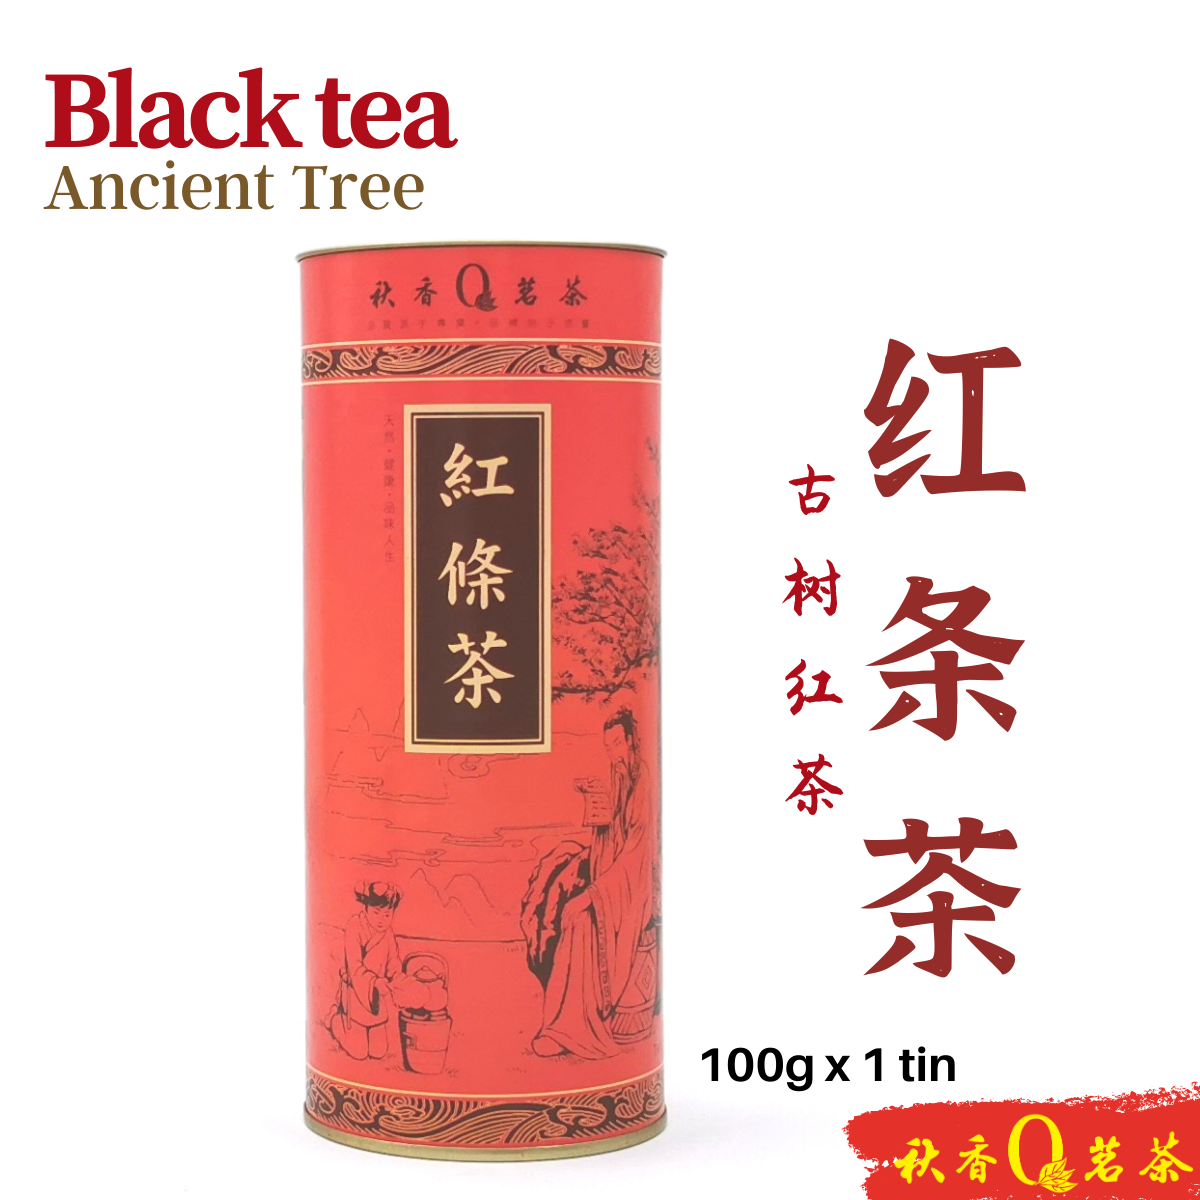 红條茶 Black Tea 【100g】|【红茶 Black Tea】